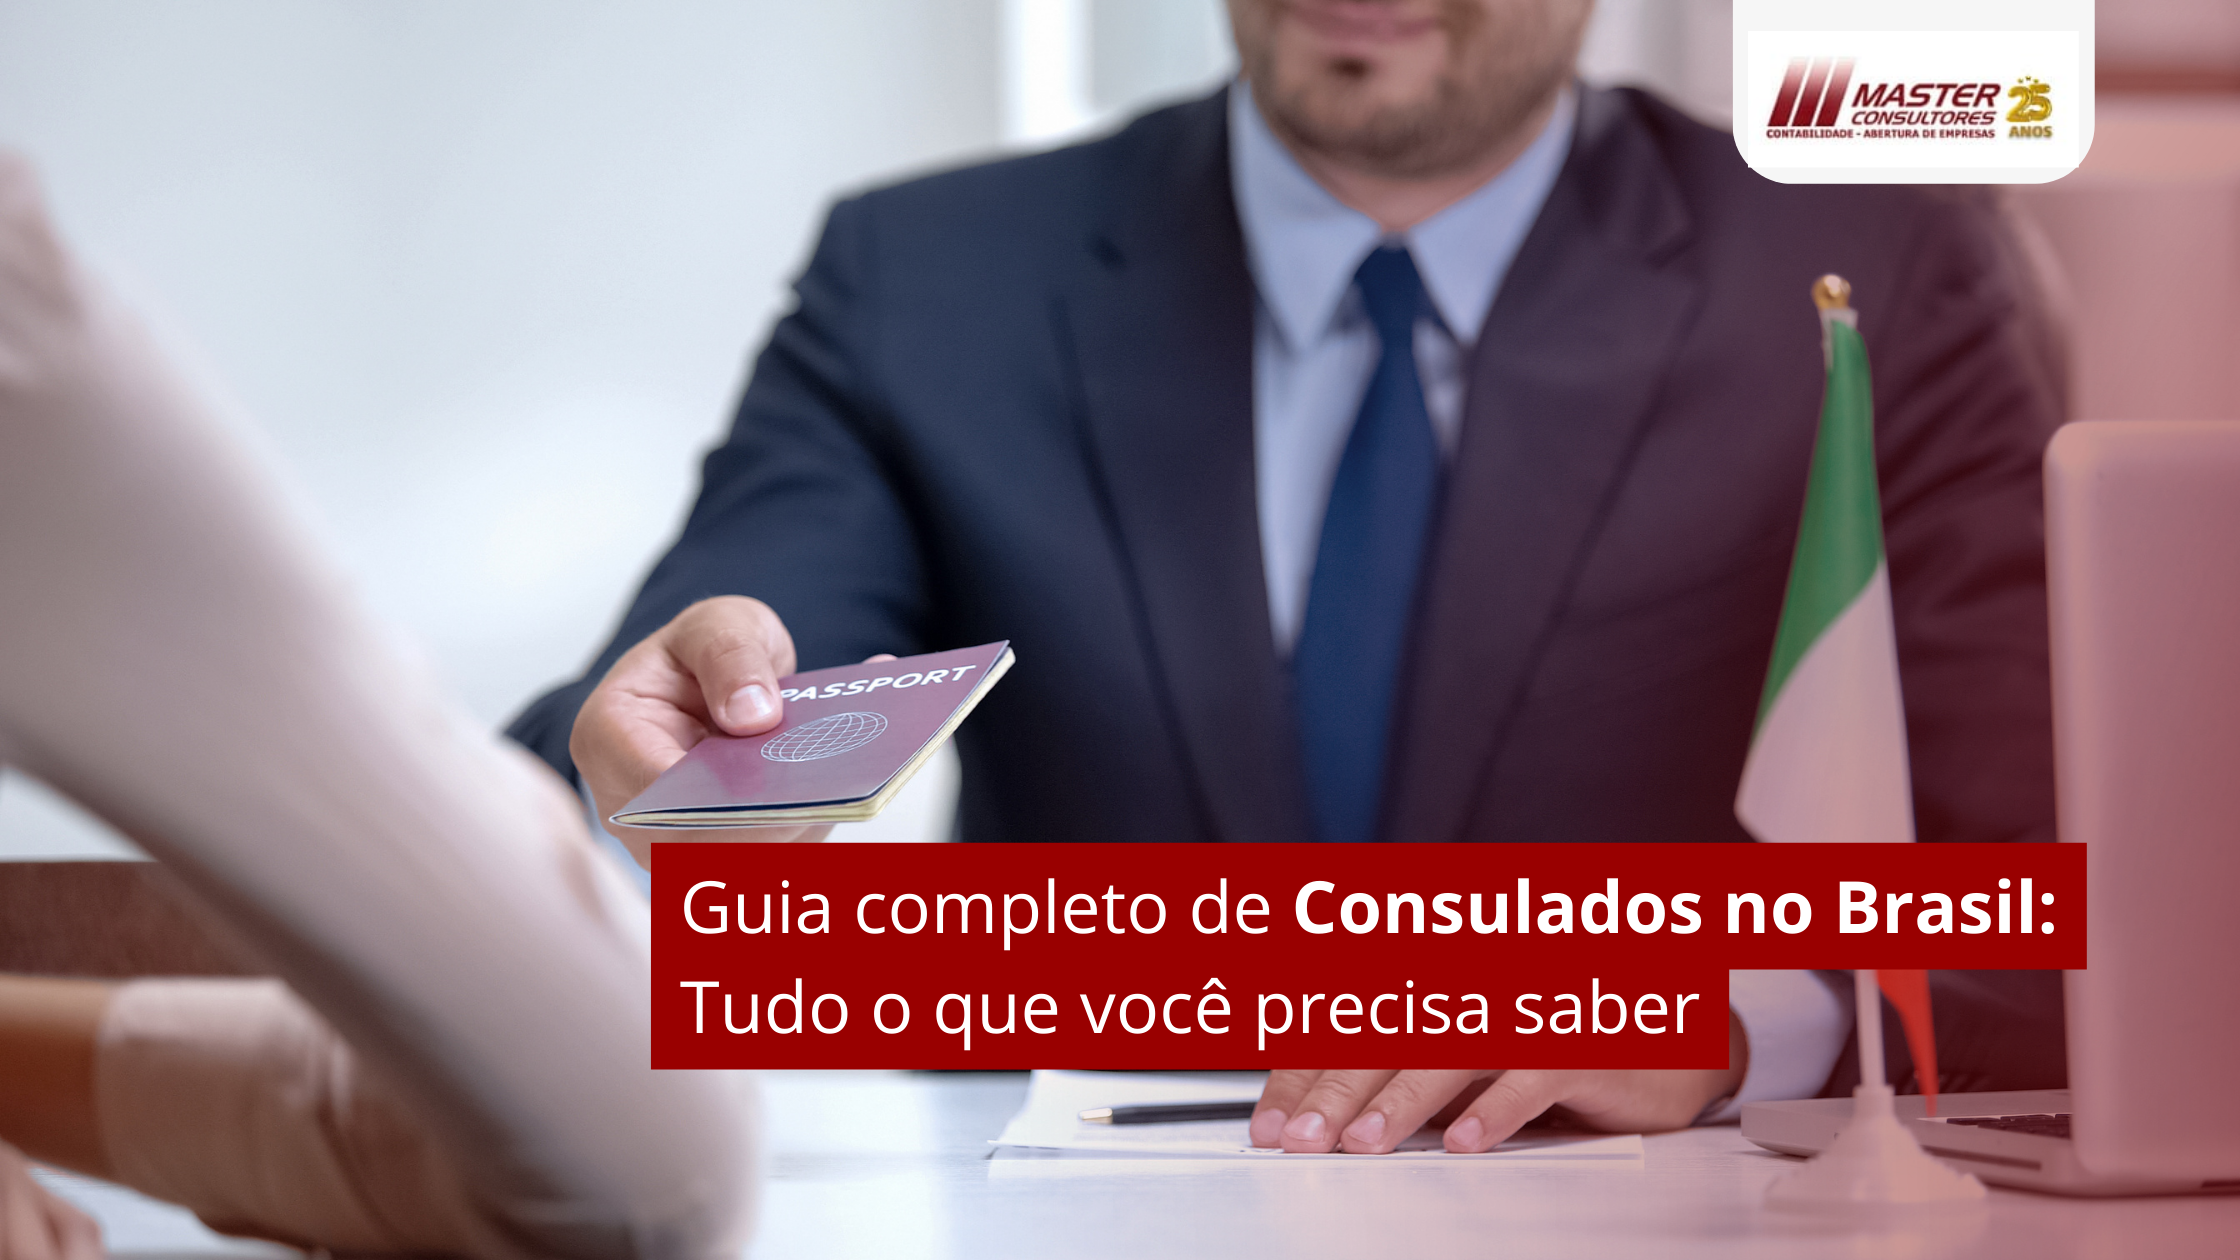 Guia Completo De Consulados No Brasil Tudo O Que Você Precisa Saber - Contabilidade na lapa - SP | Master Consultores